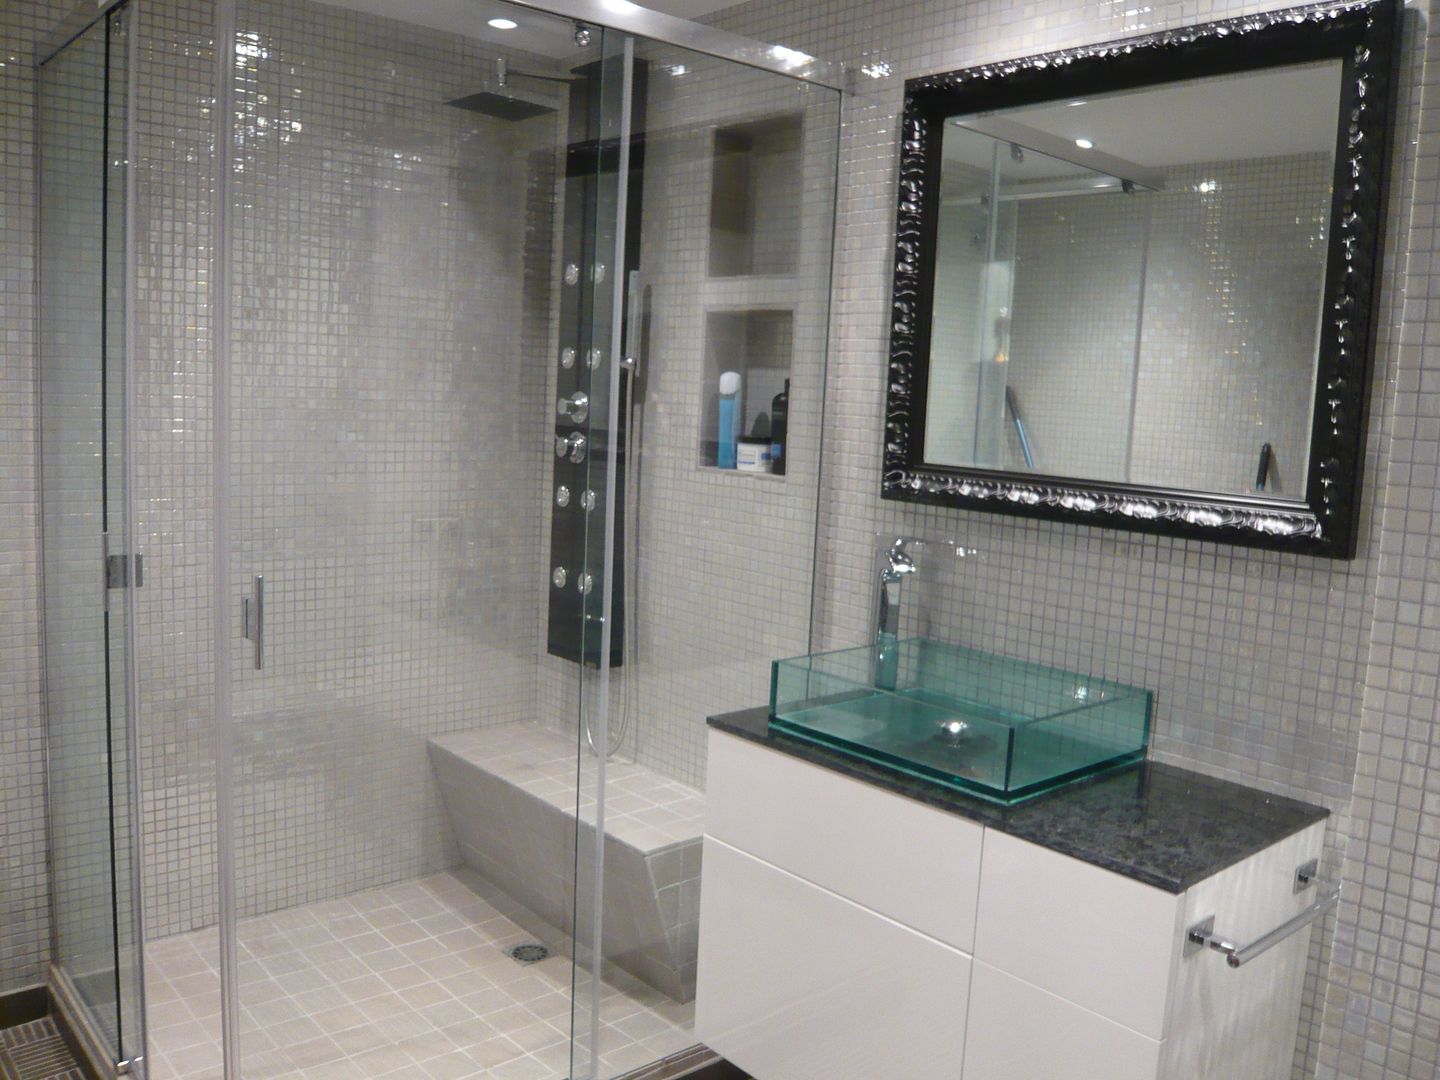 Baño suite Martyseguido diseño interiorismo Baños de estilo ecléctico